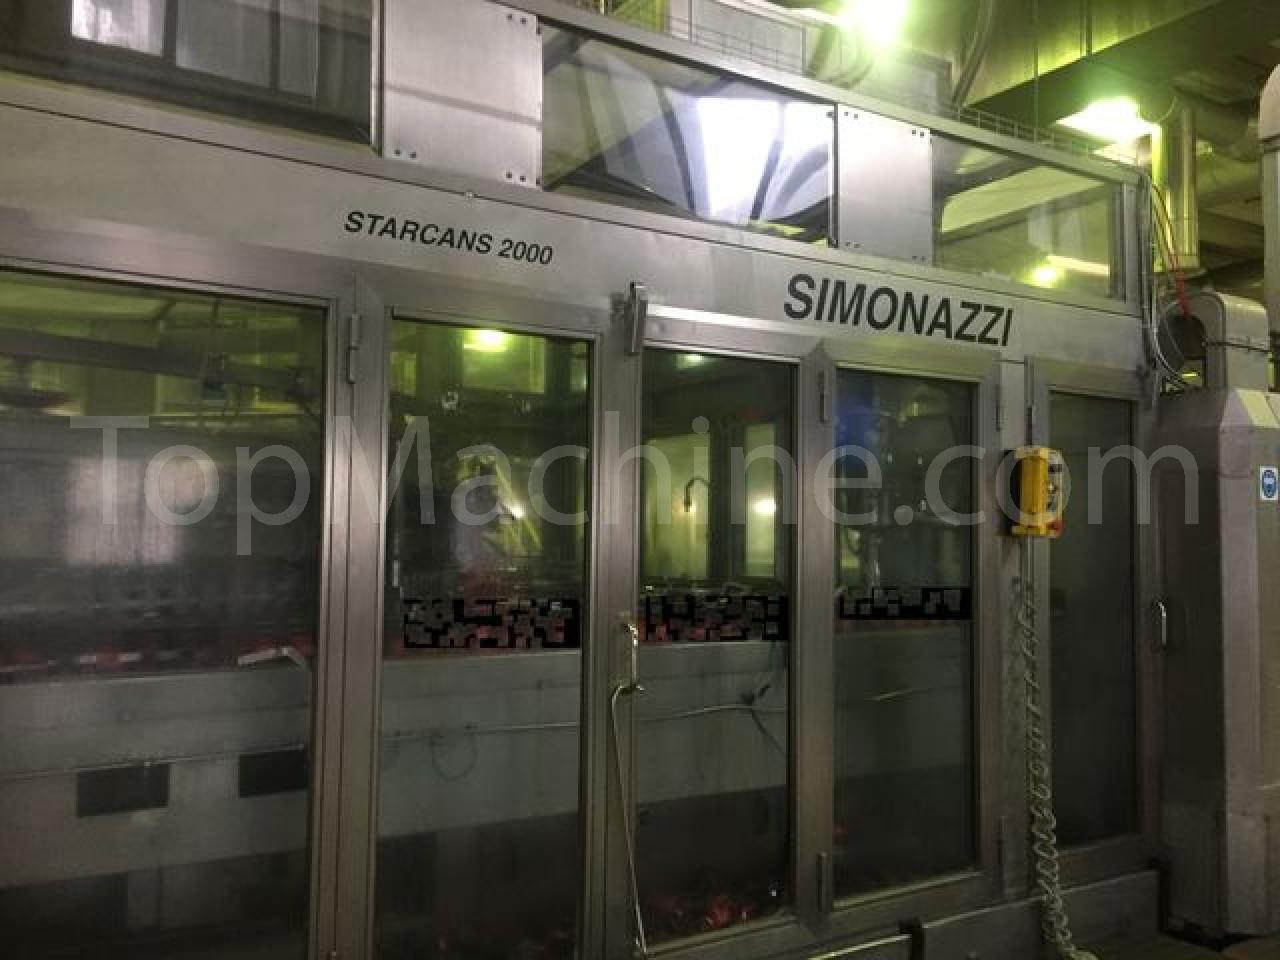 Used Simonazzi Starcans 2000 Bibite e Liquidi Impianto per lattine